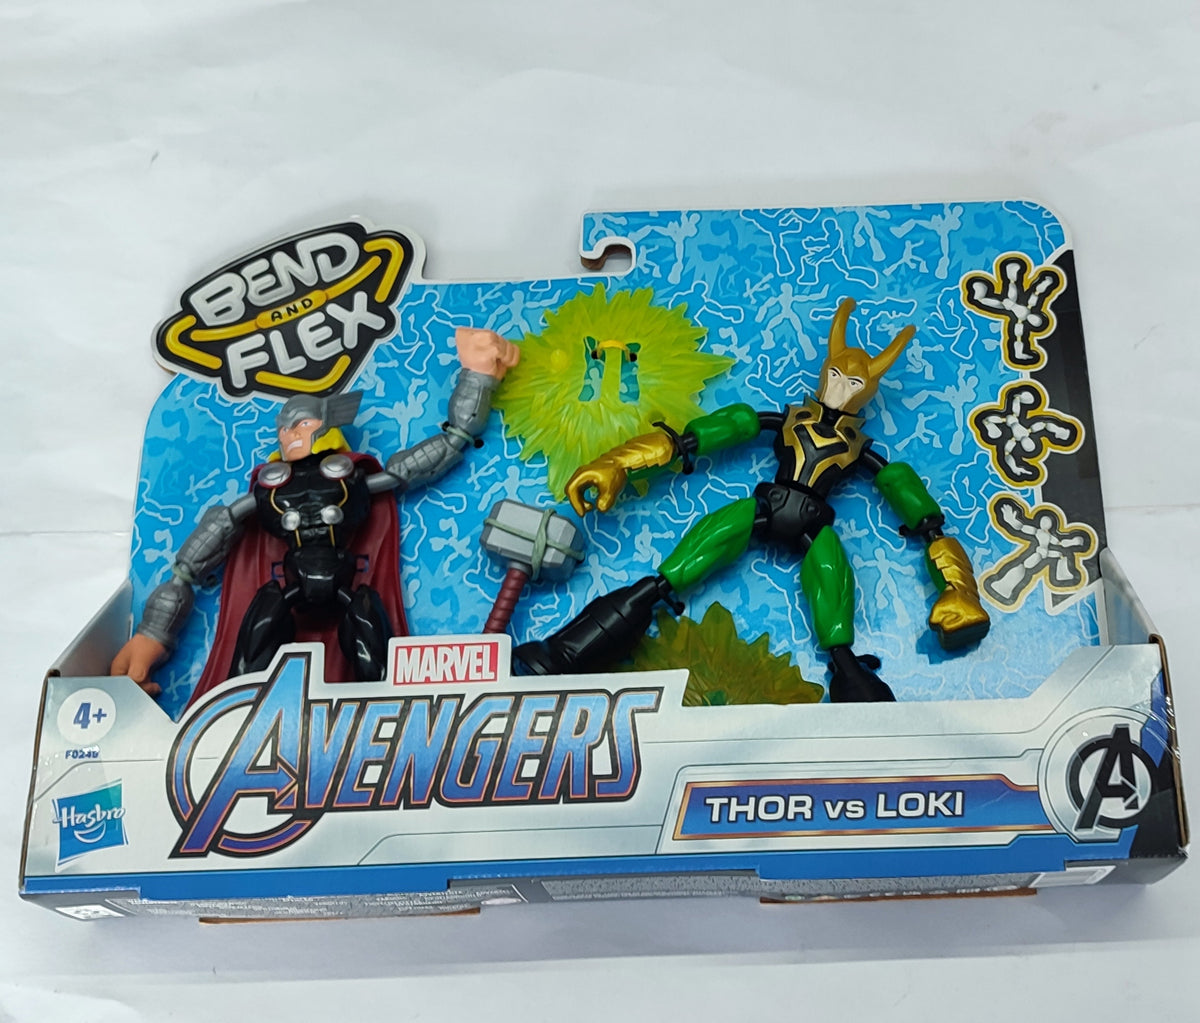 Thor Vs Loki